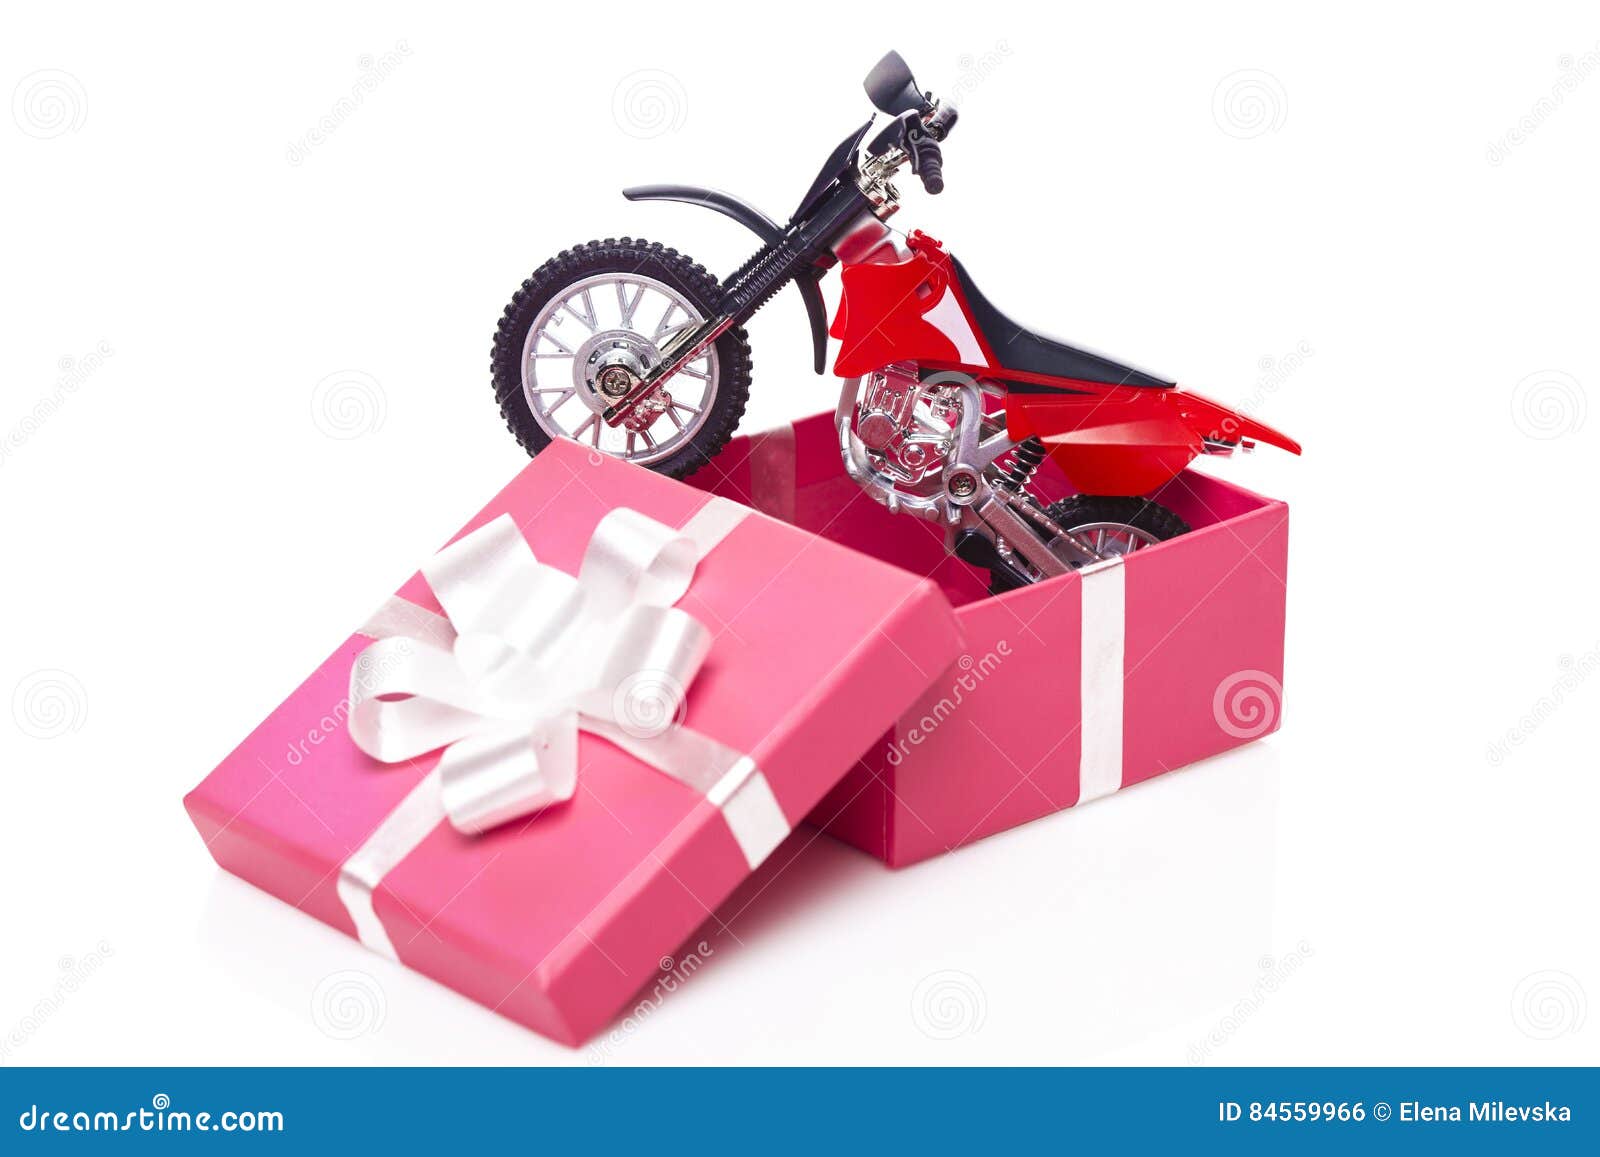 Moto dans le boîte-cadeau photo stock. Image du cadeau - 84559966